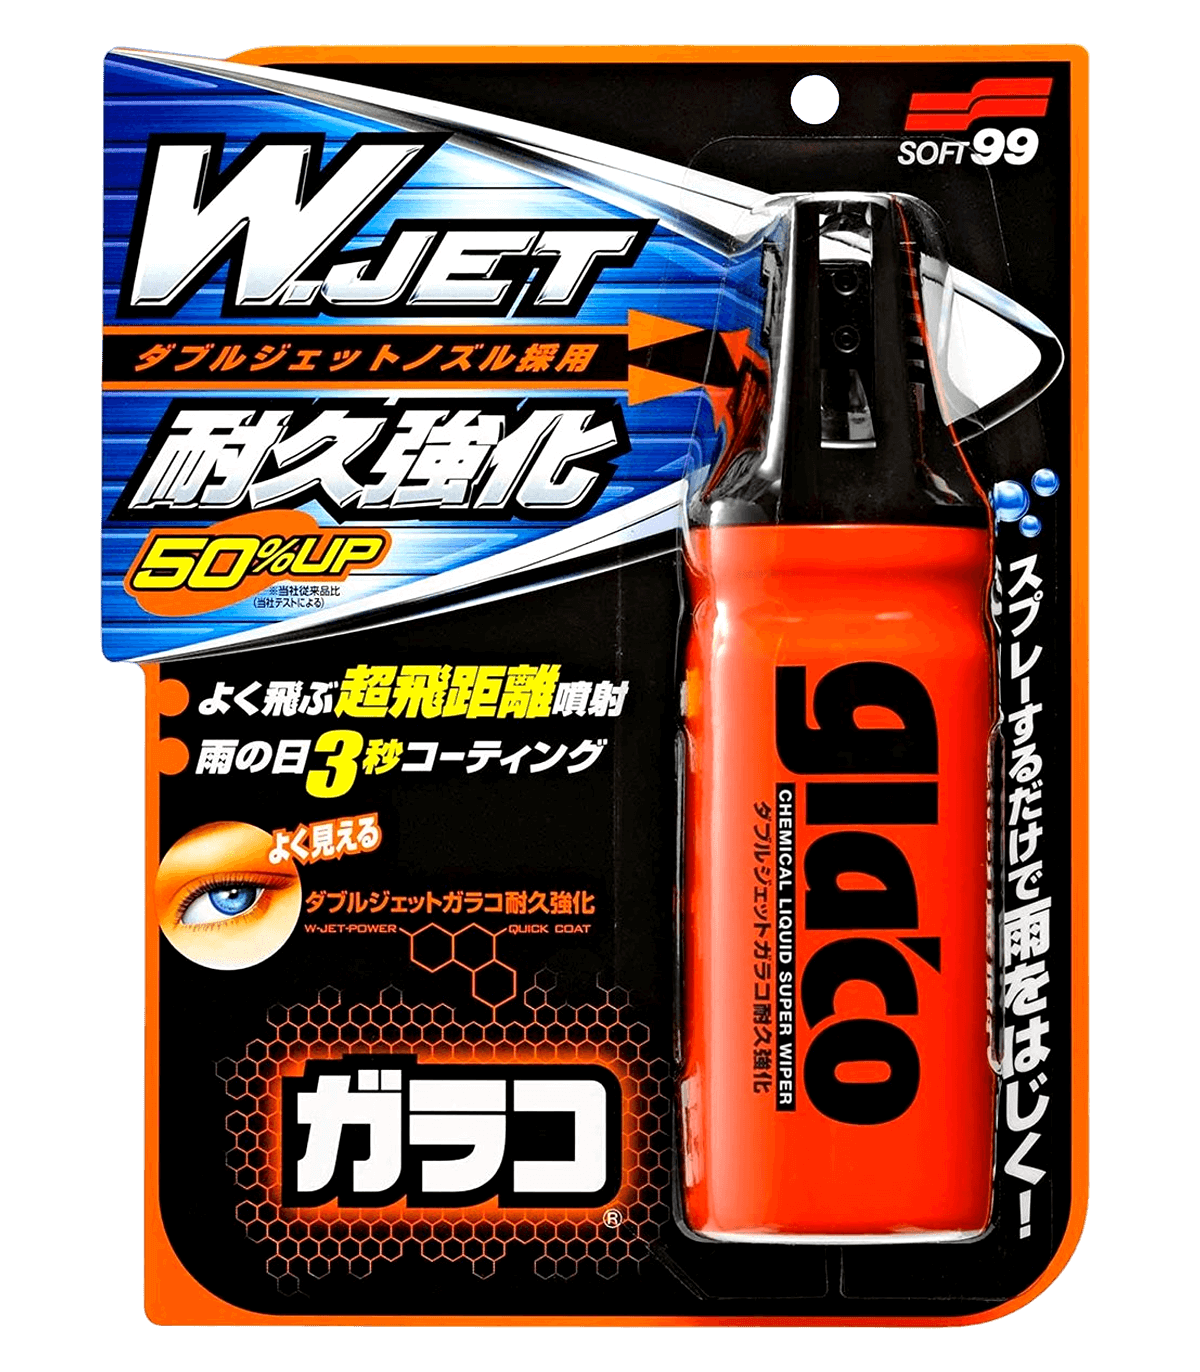 Glaco W Jet Strong (180 ml)